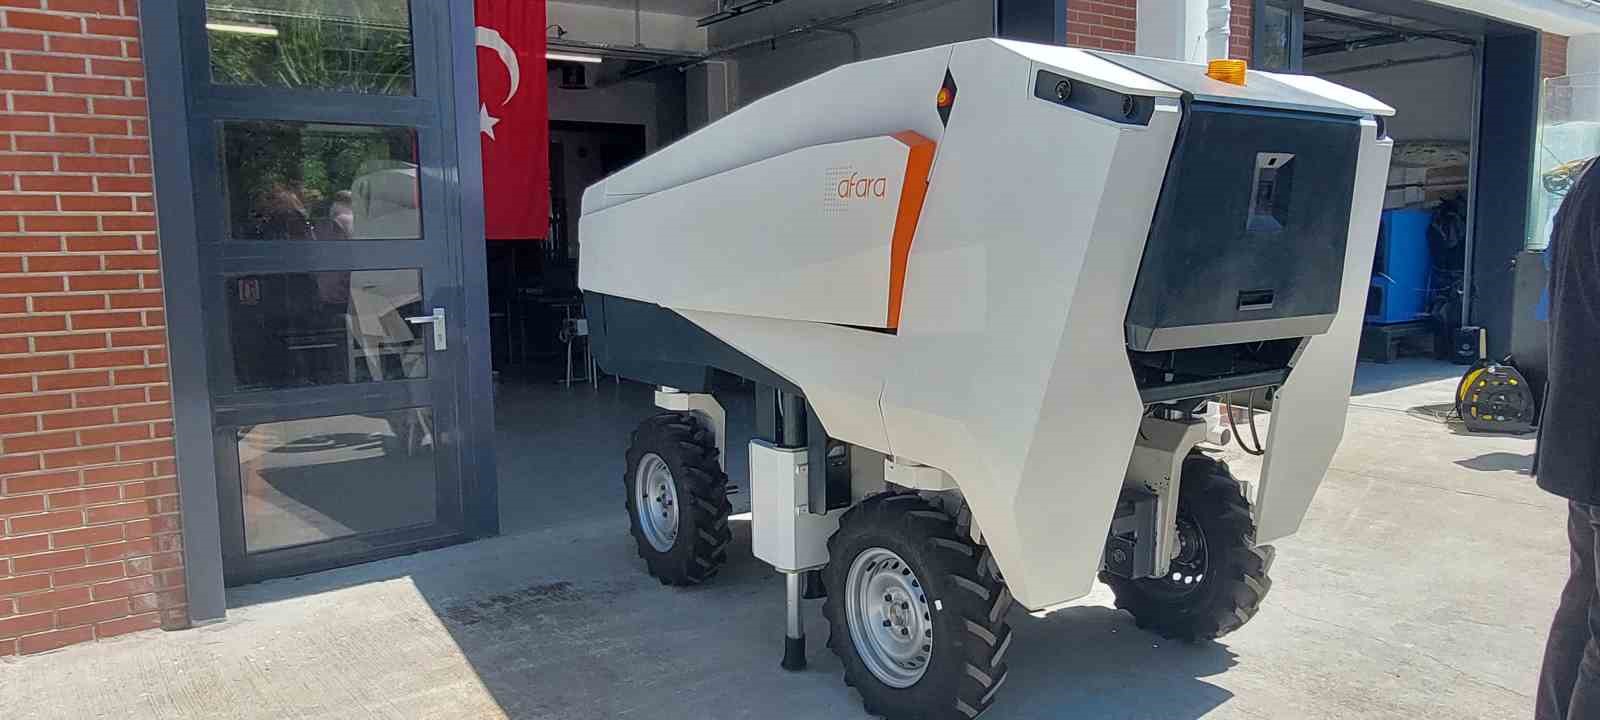 turkiyenin en yenilikci milli teknolojileri gorucuye cikti 5 QNRUakq7